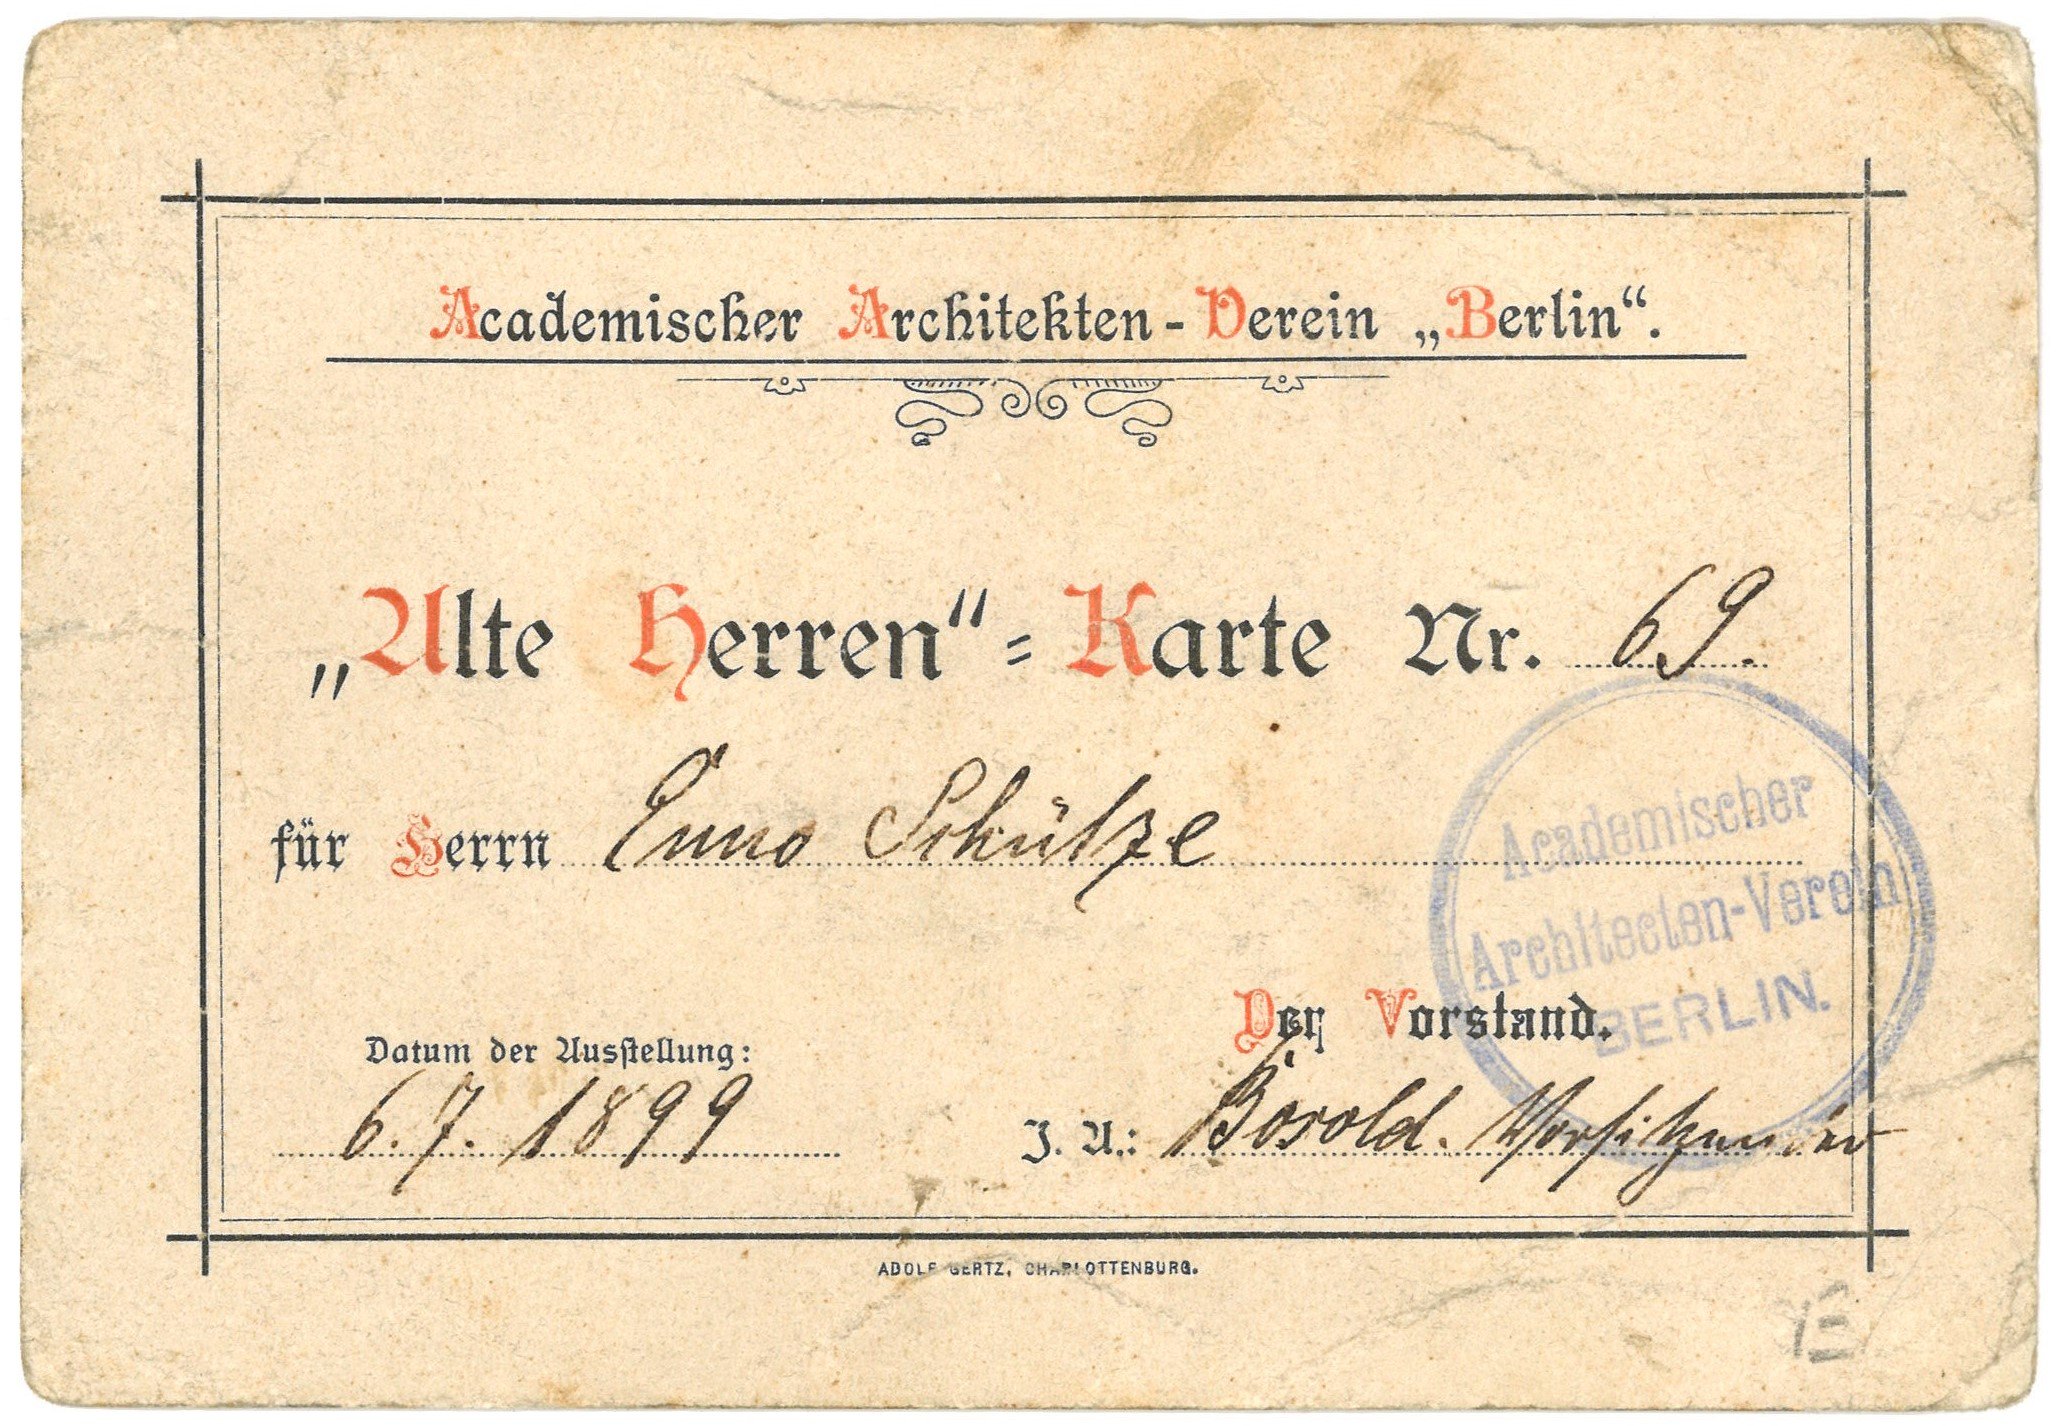 „Alte Herren“-Karte des Akademischen Architekten-Vereins „Berlin“ für Enno Schütze (1899) (Landesgeschichtliche Vereinigung für die Mark Brandenburg e.V. CC BY)